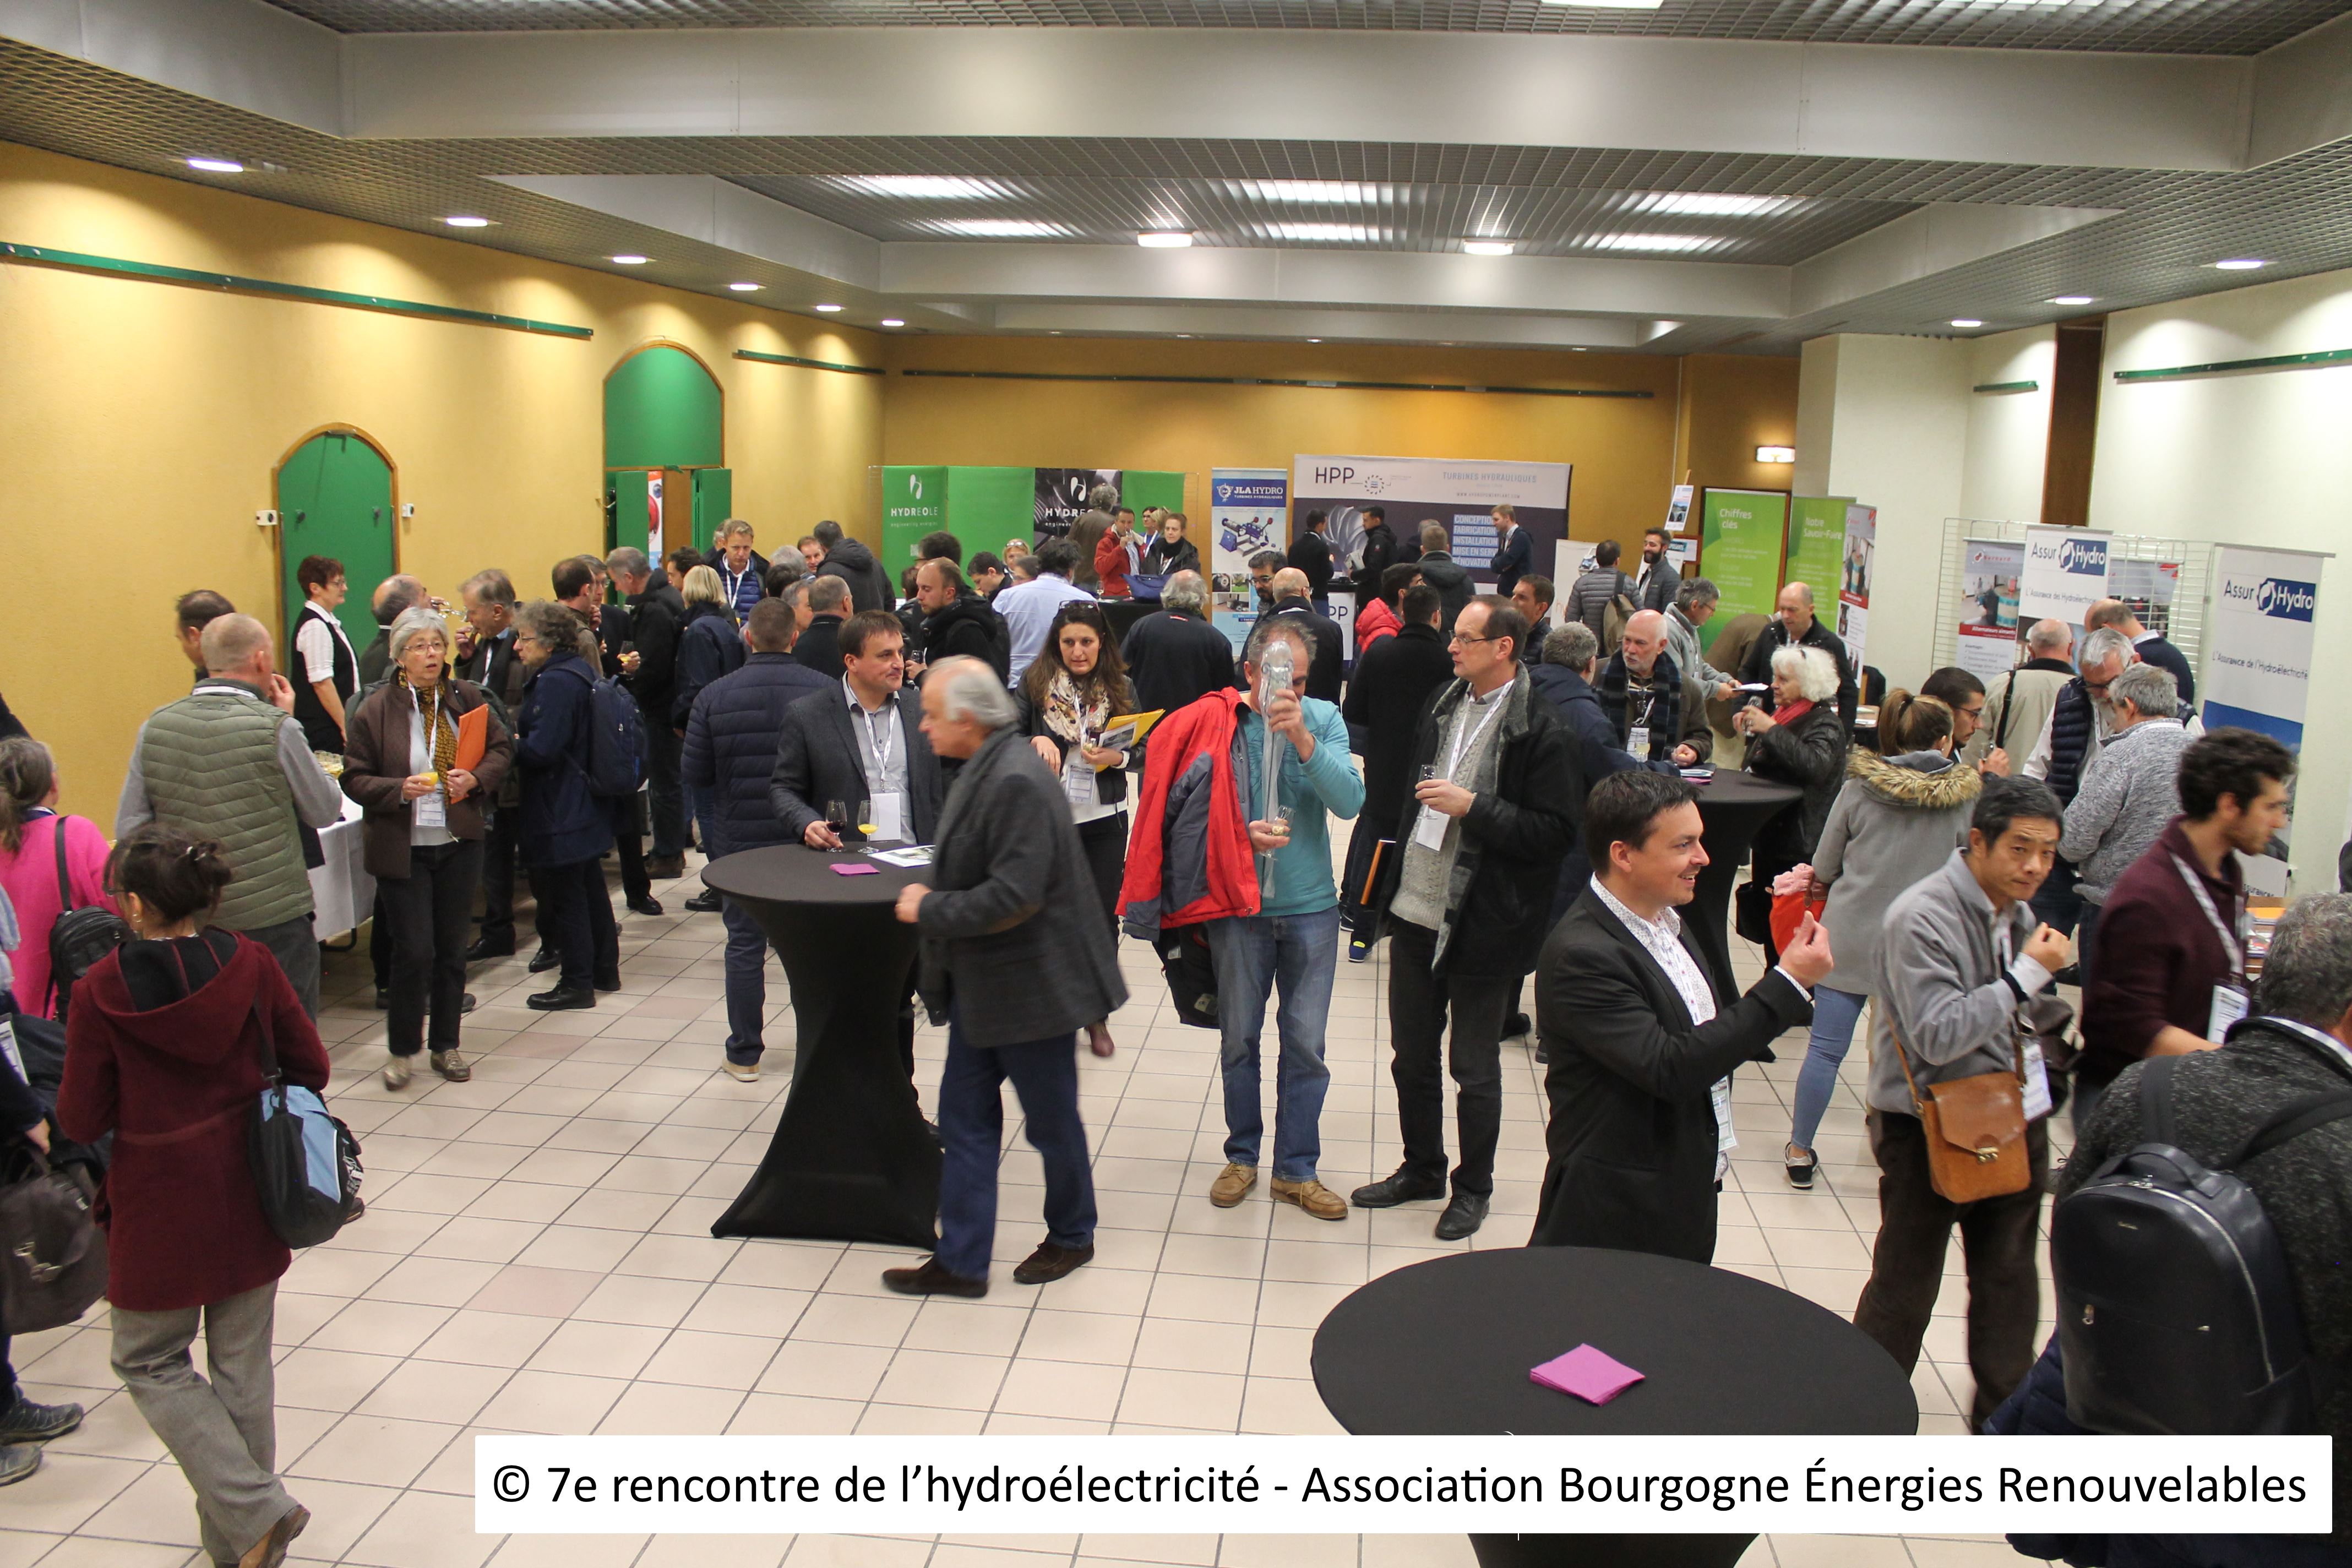 10 - © 7e rencontre de l’hydroélectricité - Association Bourgogne Énergies Renouvelables